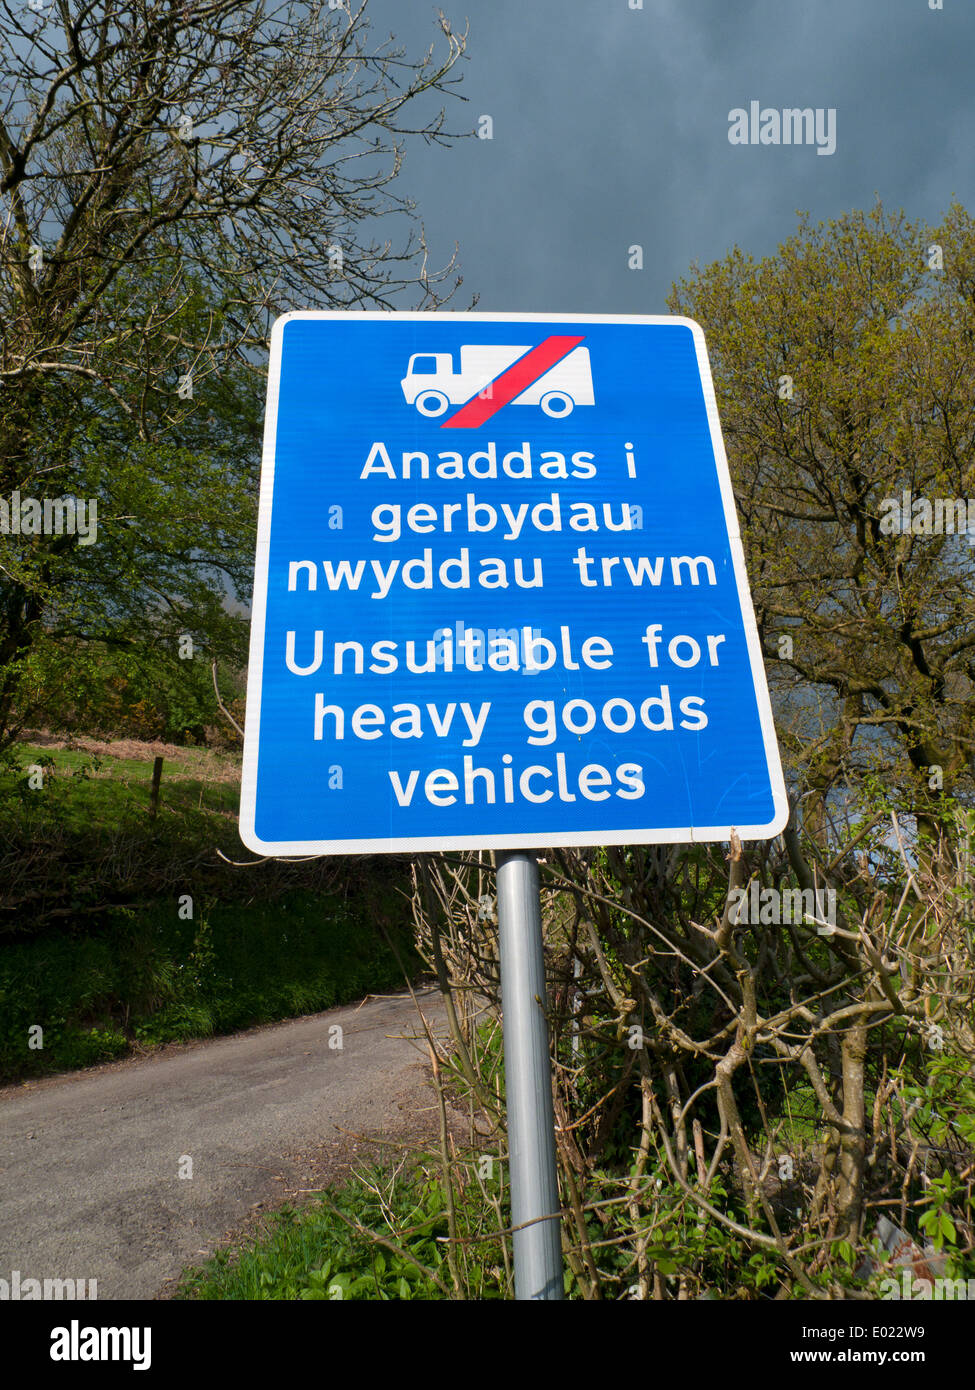 Zweisprachig Englisch Walisisch Zeichen verbietet Lkw Fahrzeuge zu verwenden, einen schmalen Feldweg Carmarthenshire Wales UK KATHY DEWITT Stockfoto